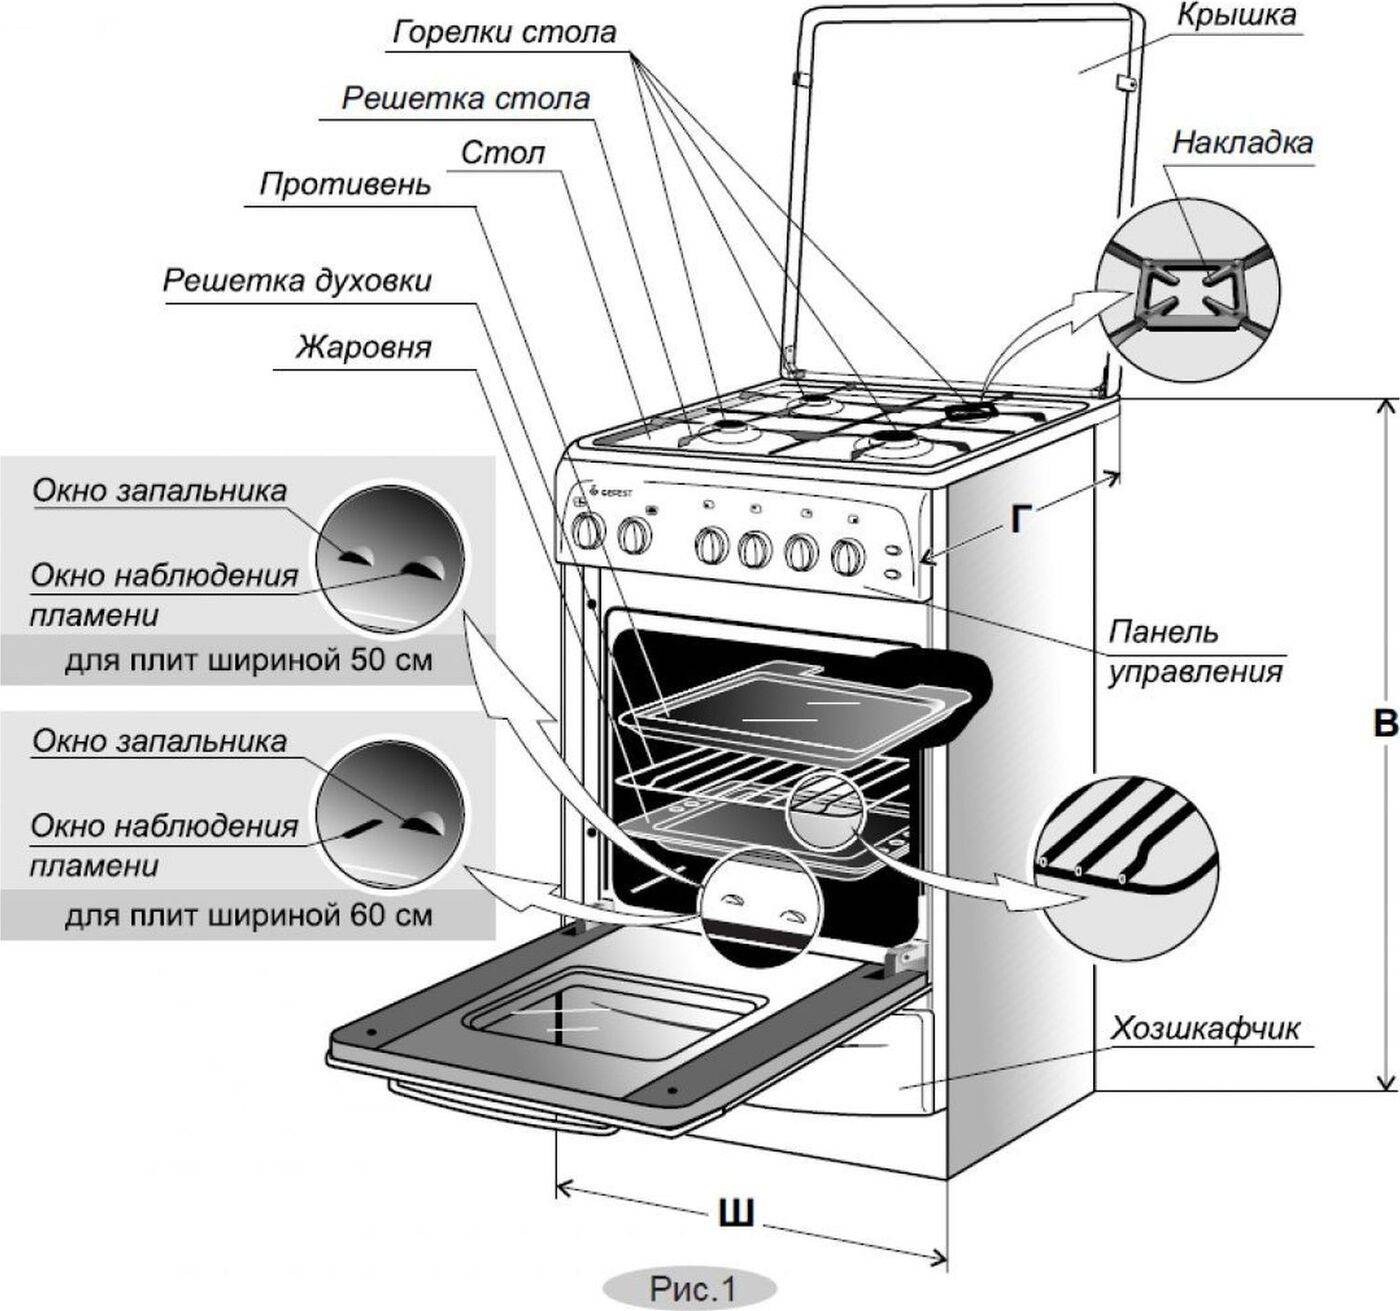 Устройство газовой плиты: конструкция плиты и духовки. принцип работы и правила эксплуатации